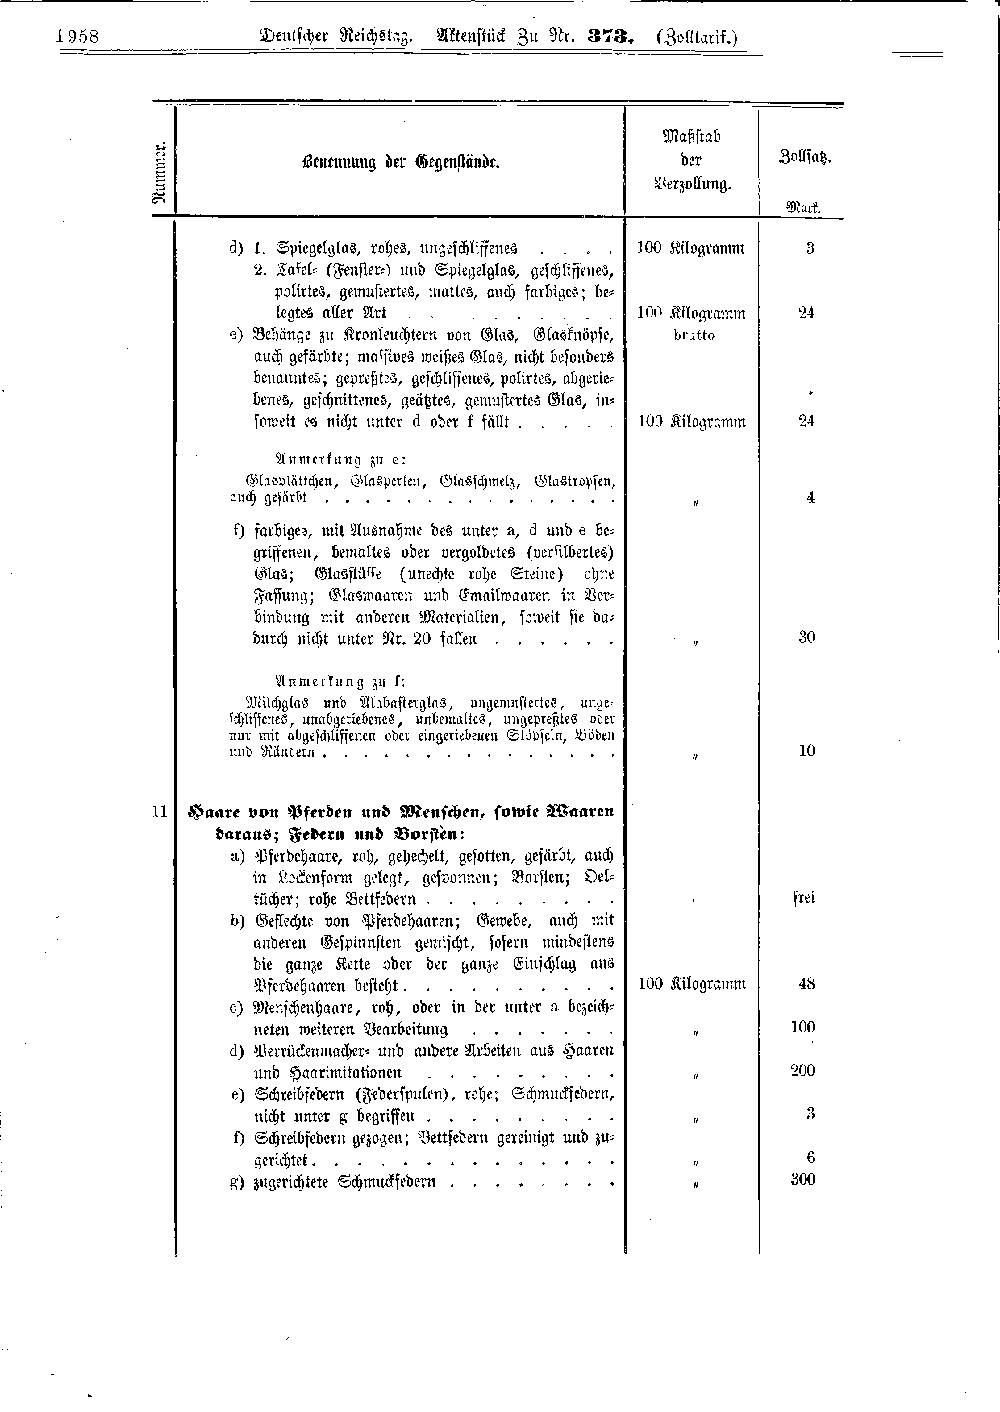 Scan der Seite 1958